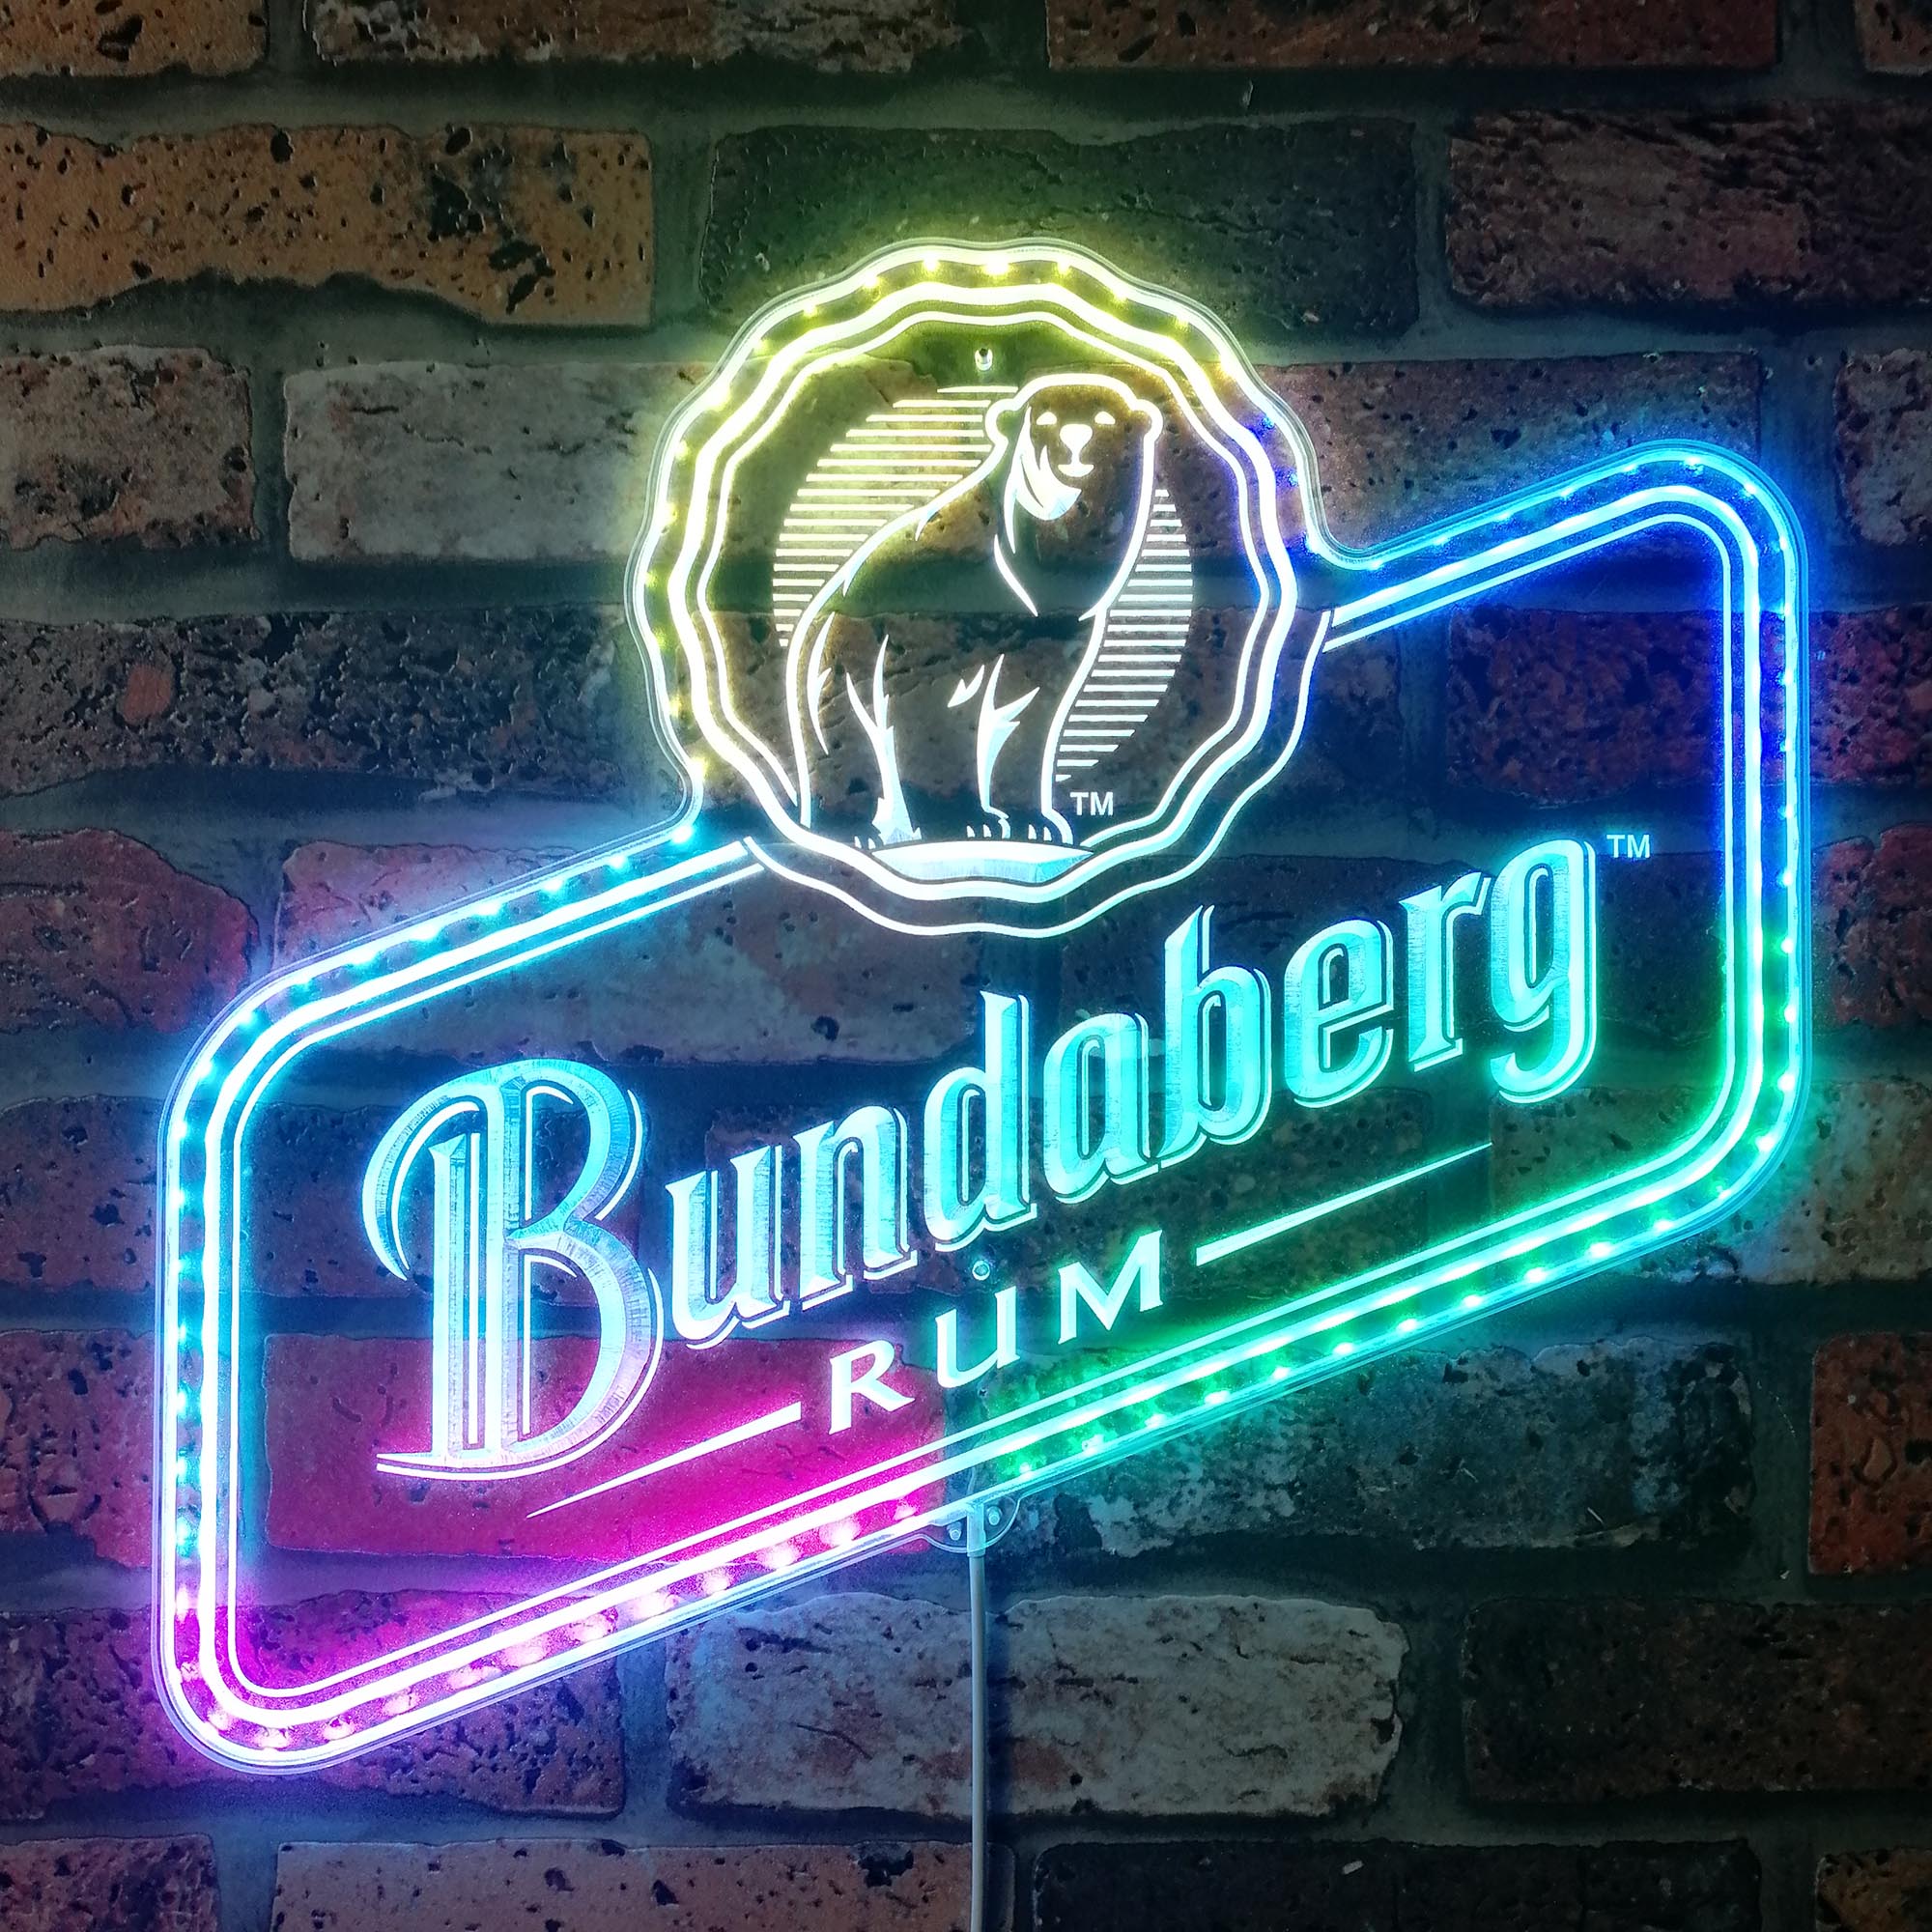 Bundaberg Rum Dynamic RGB Edge Lit LED Sign